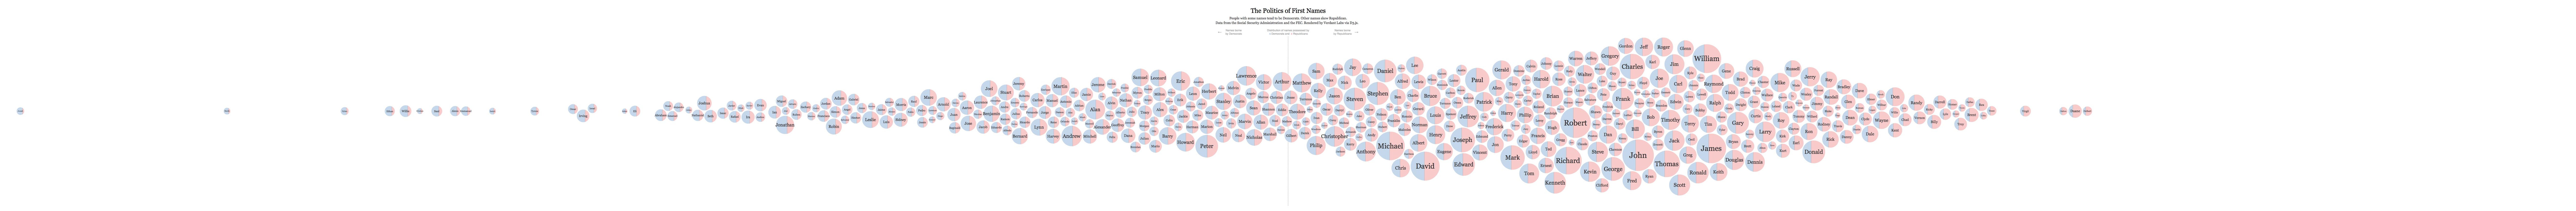 The Politics of Names